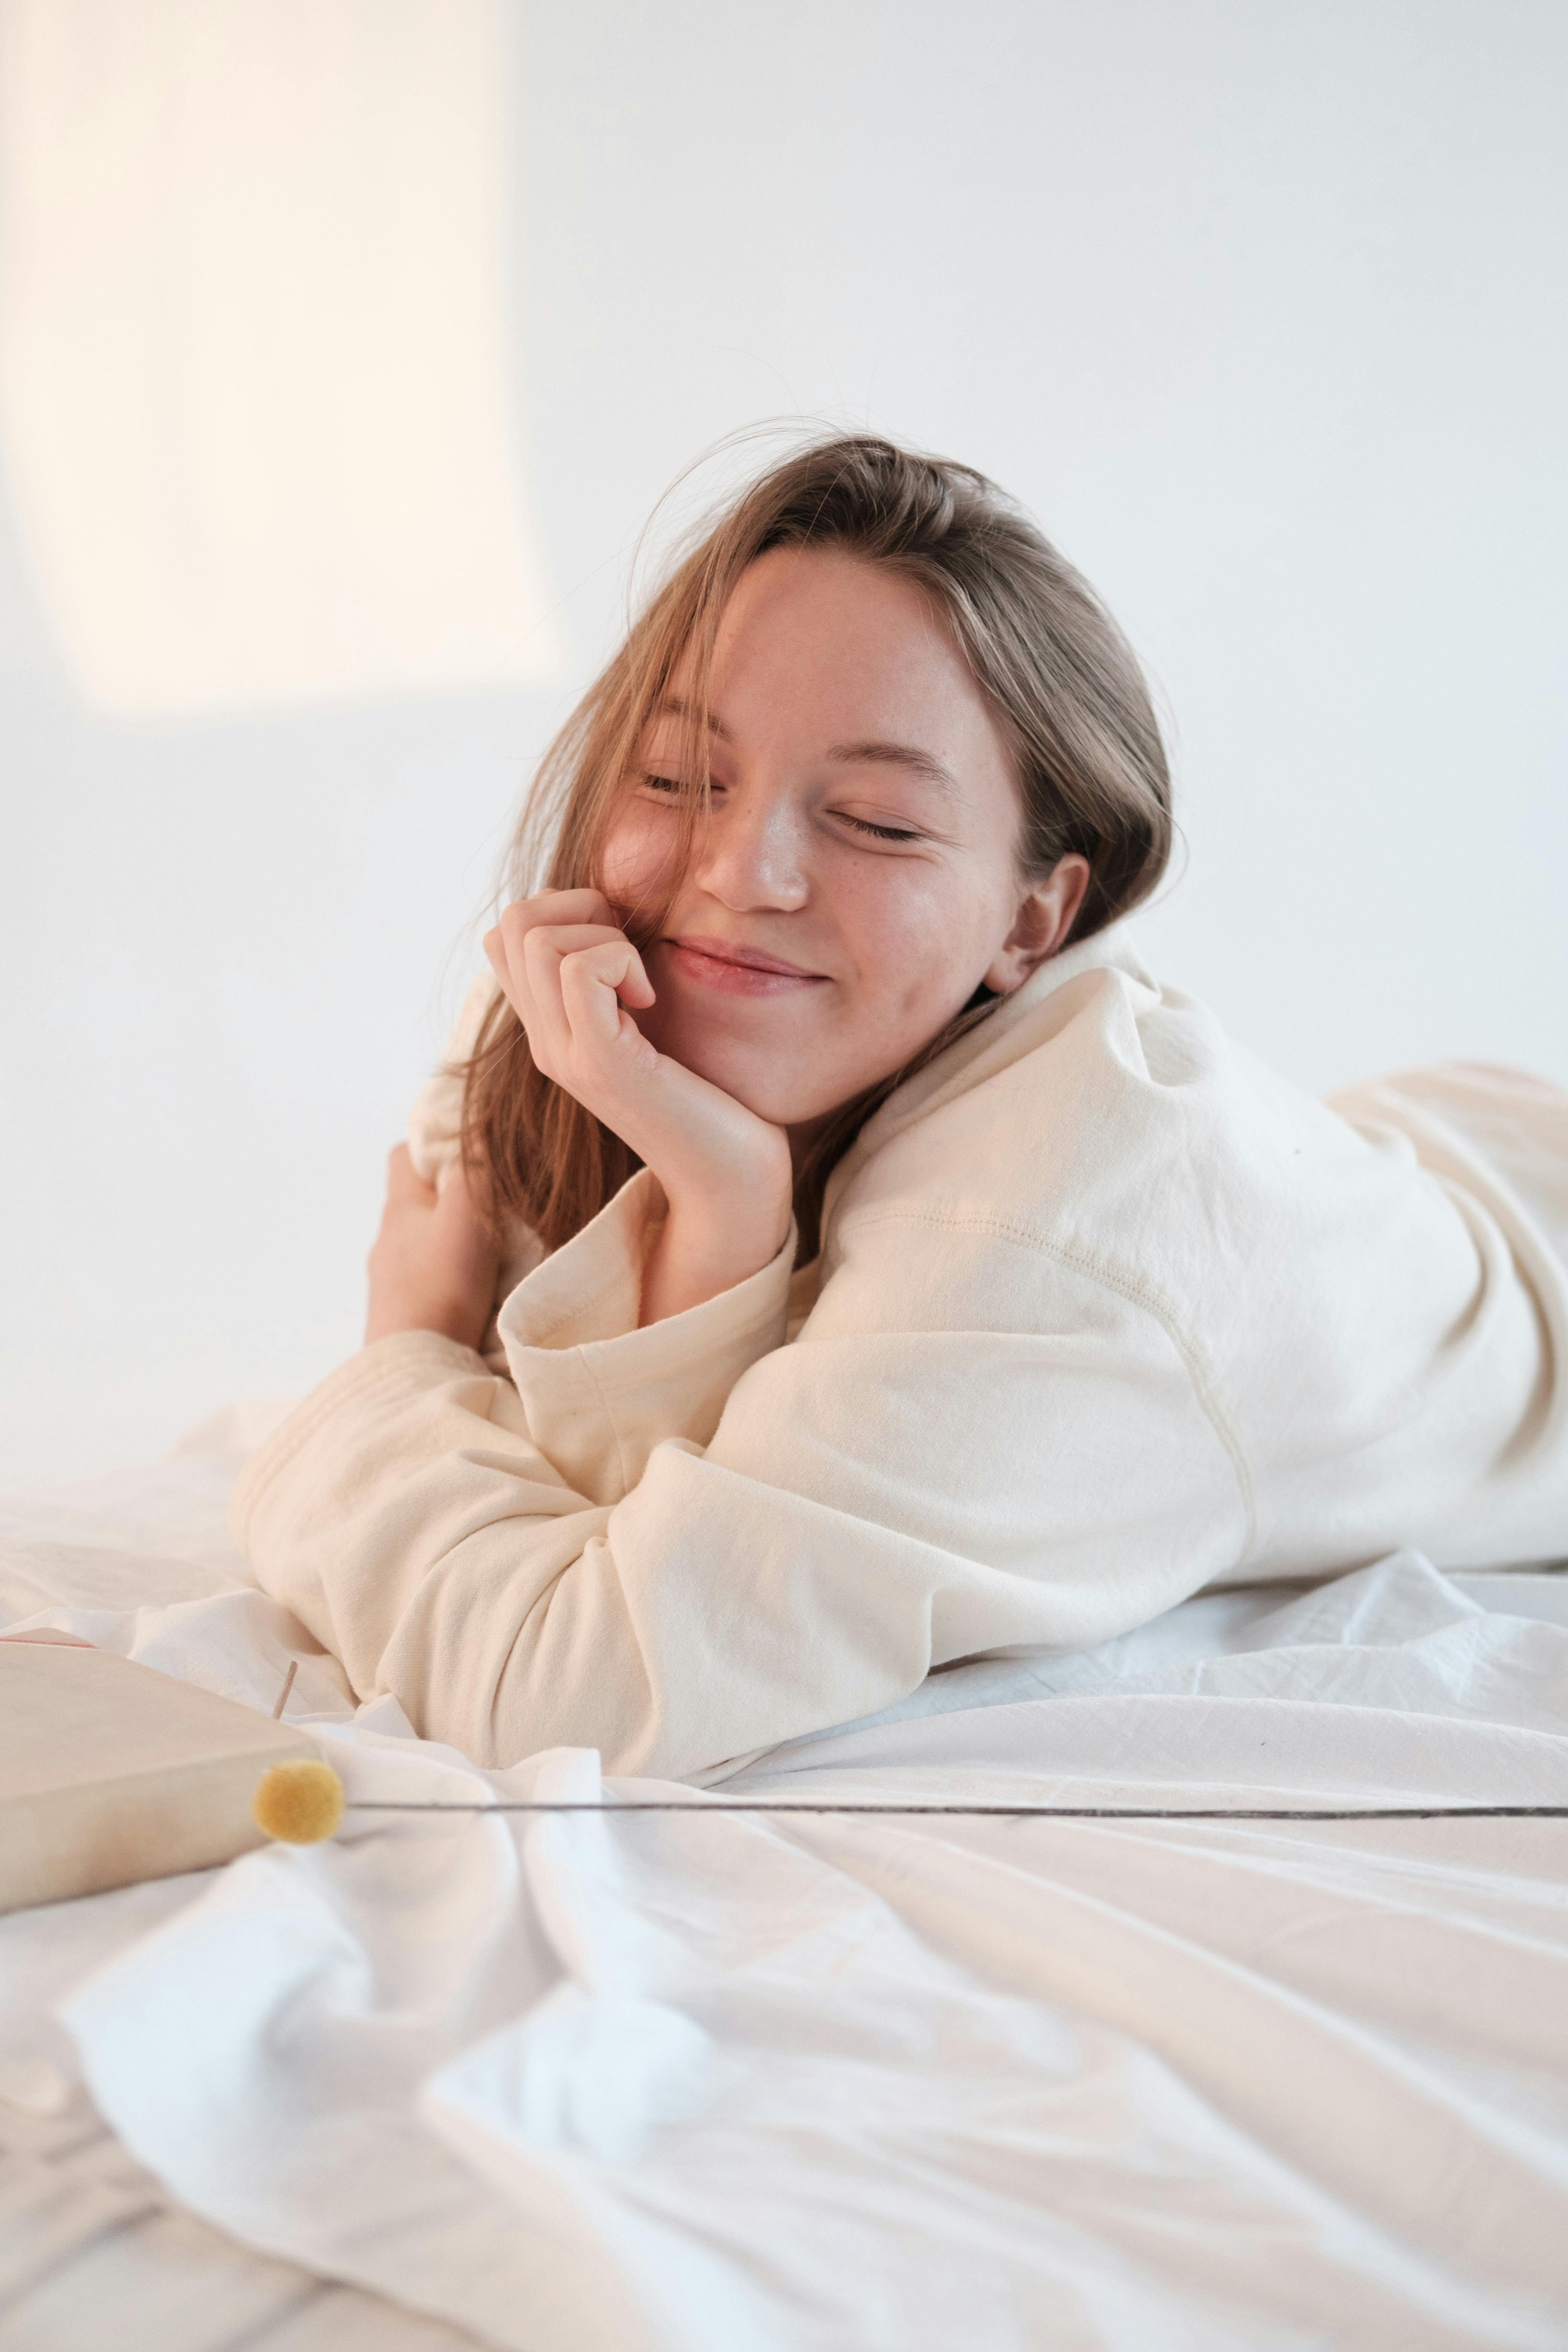 Une femme heureuse allongée sur un lit | Source : Pexels